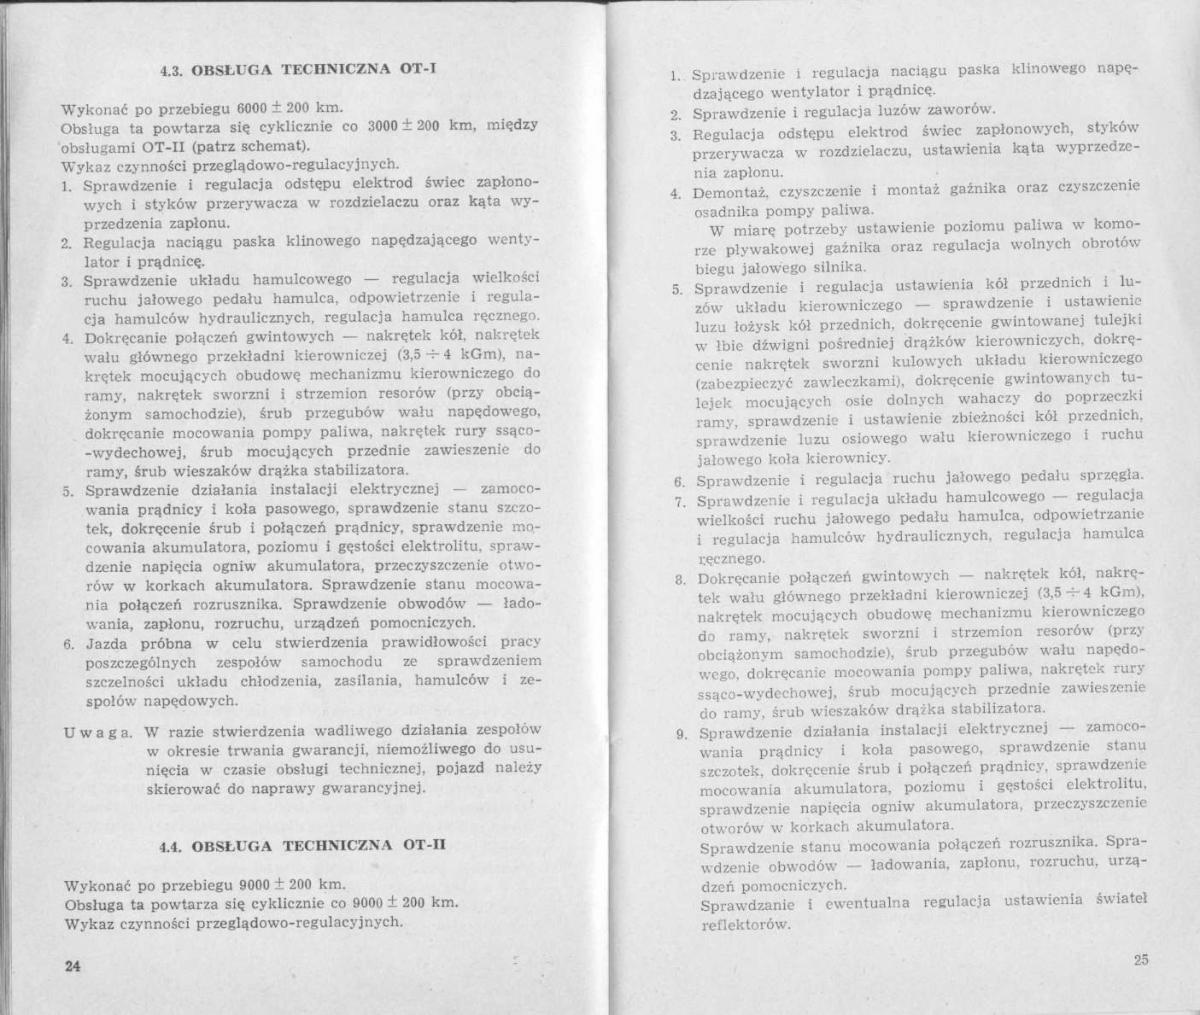 FSO Warszawa instrukcja obslugi / page 12